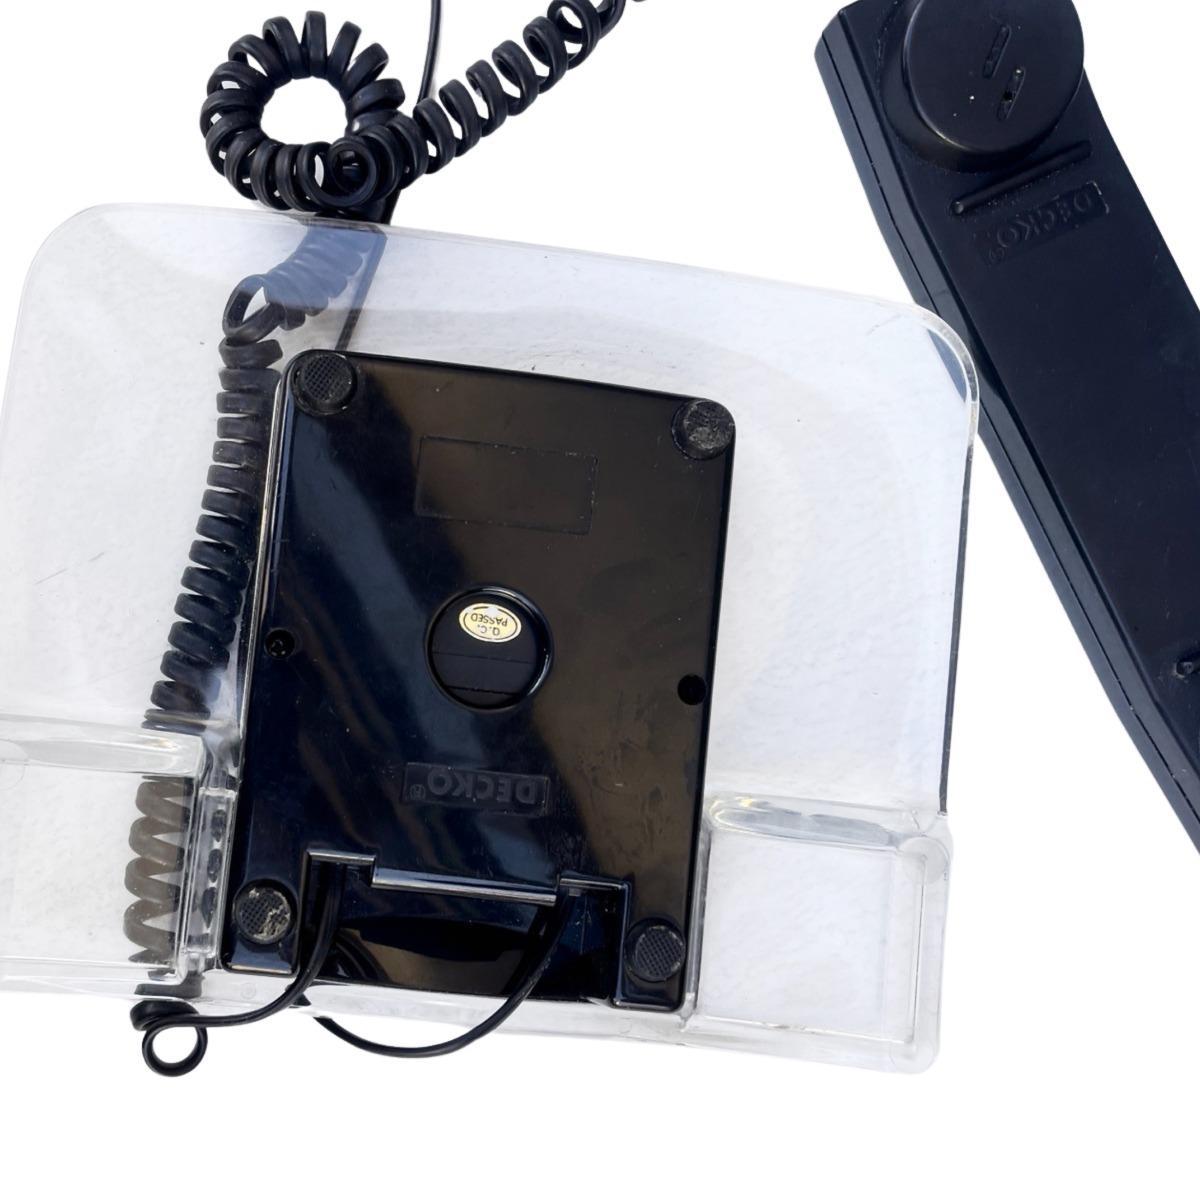 Włoski modernistyczny telefon stacjonarny z plexi, Decko, lata 90. 6 Full Screen